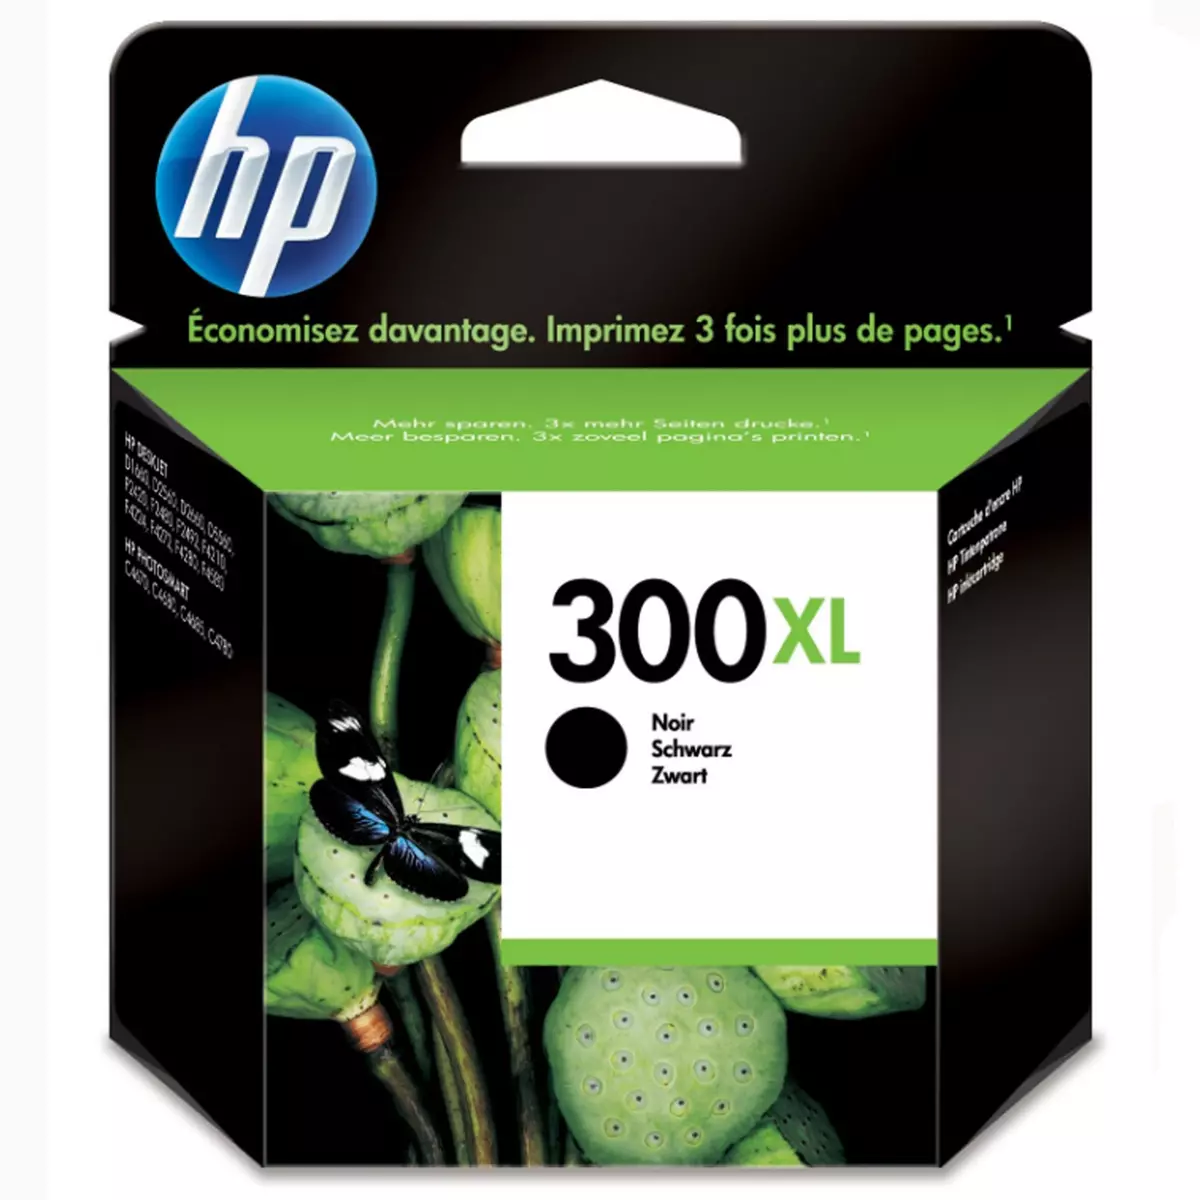 HP Cartouche d'Encre HP 300XL Noire grande capacité Authentique (CC641EE)